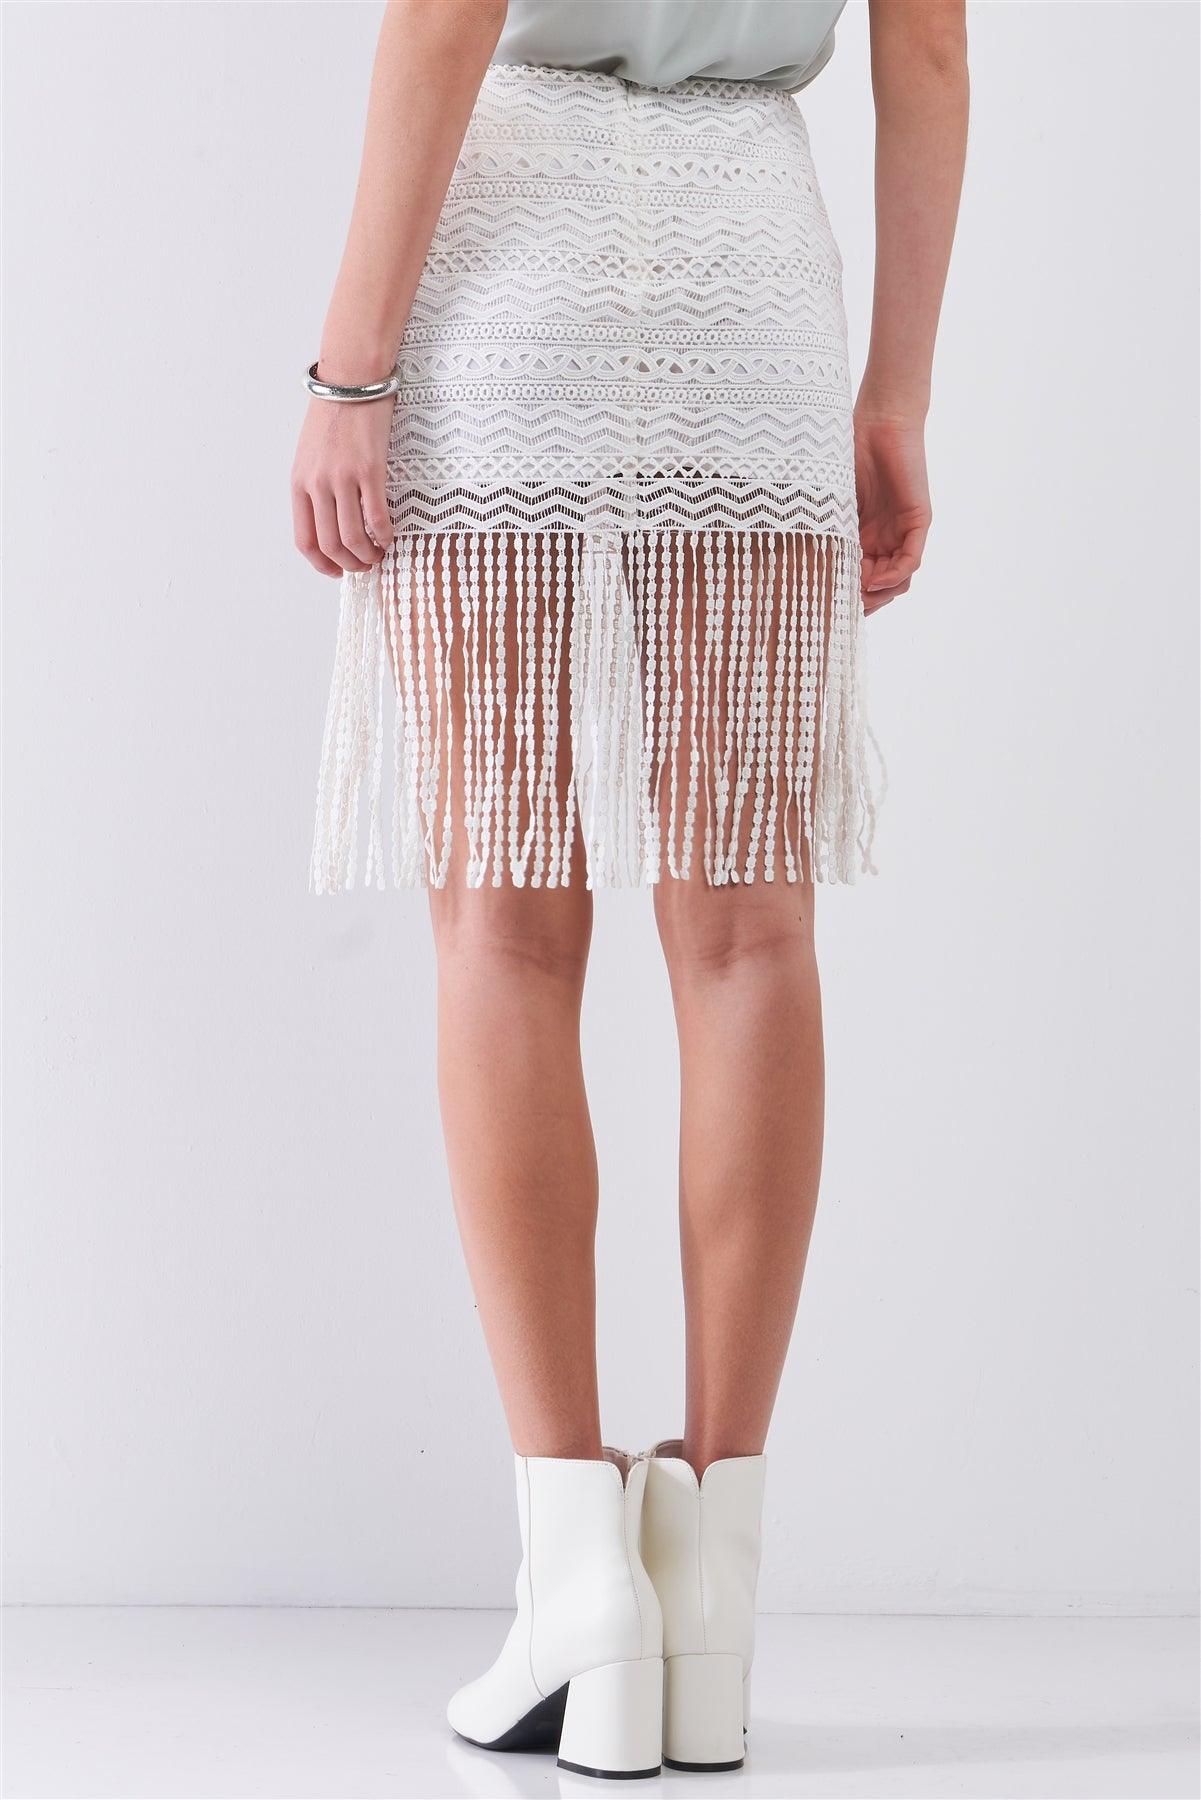 White High Waist Lace Crochet Fringe Trim Detail Mini Skirt /1-2-2-1